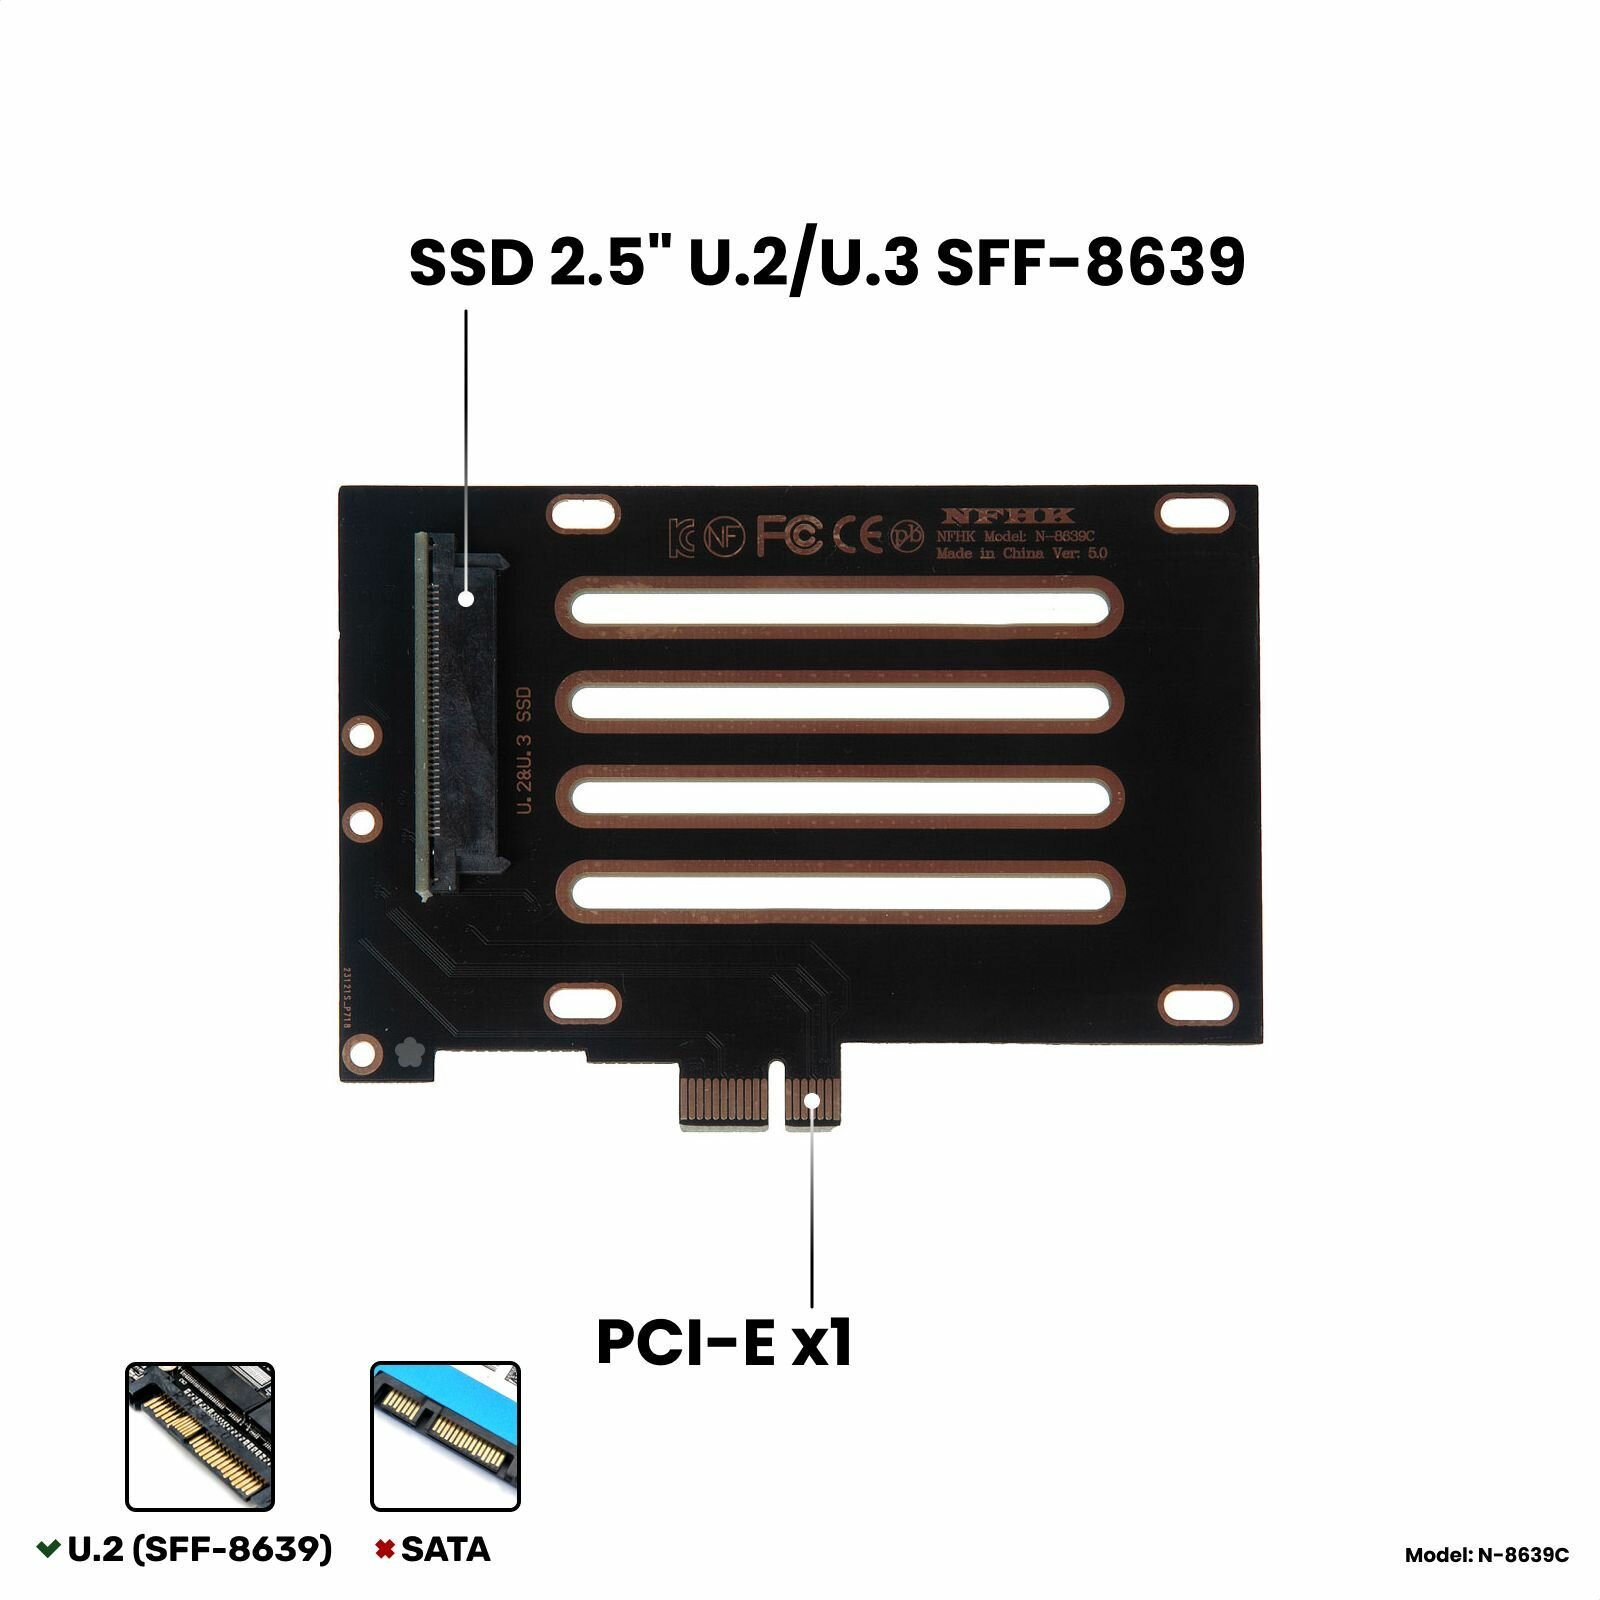 Адаптер-переходник (плата расширения) для установки SSD 2.5" U.2/U.3 SFF-8639 PCI-E NVMe в слот PCI-E x1, черный, NHFK N-8639C